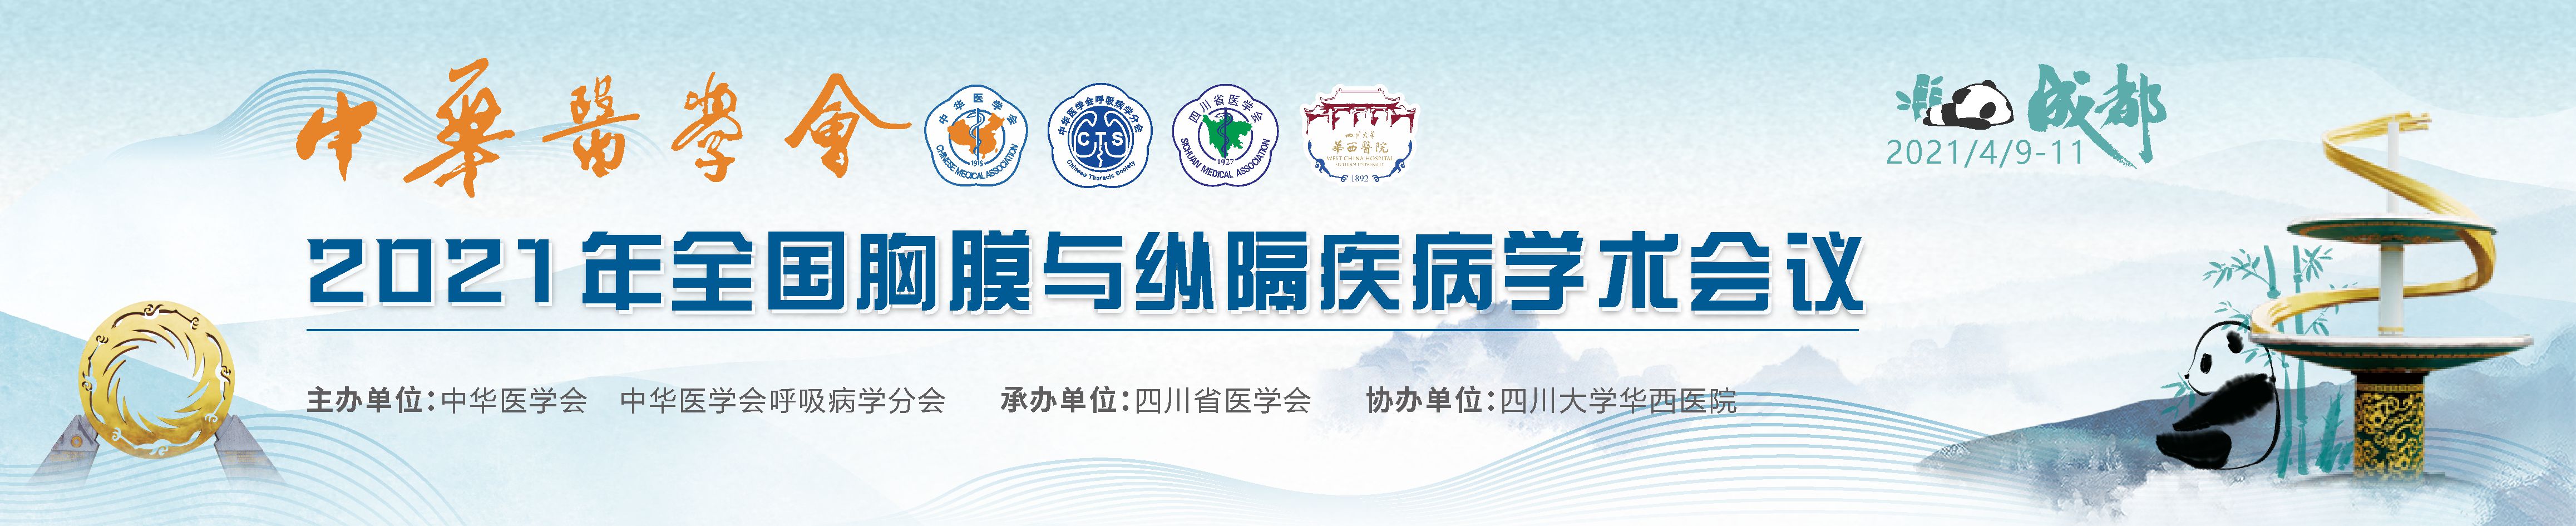 中华医学会2021年全国胸膜与纵隔疾病学术会议